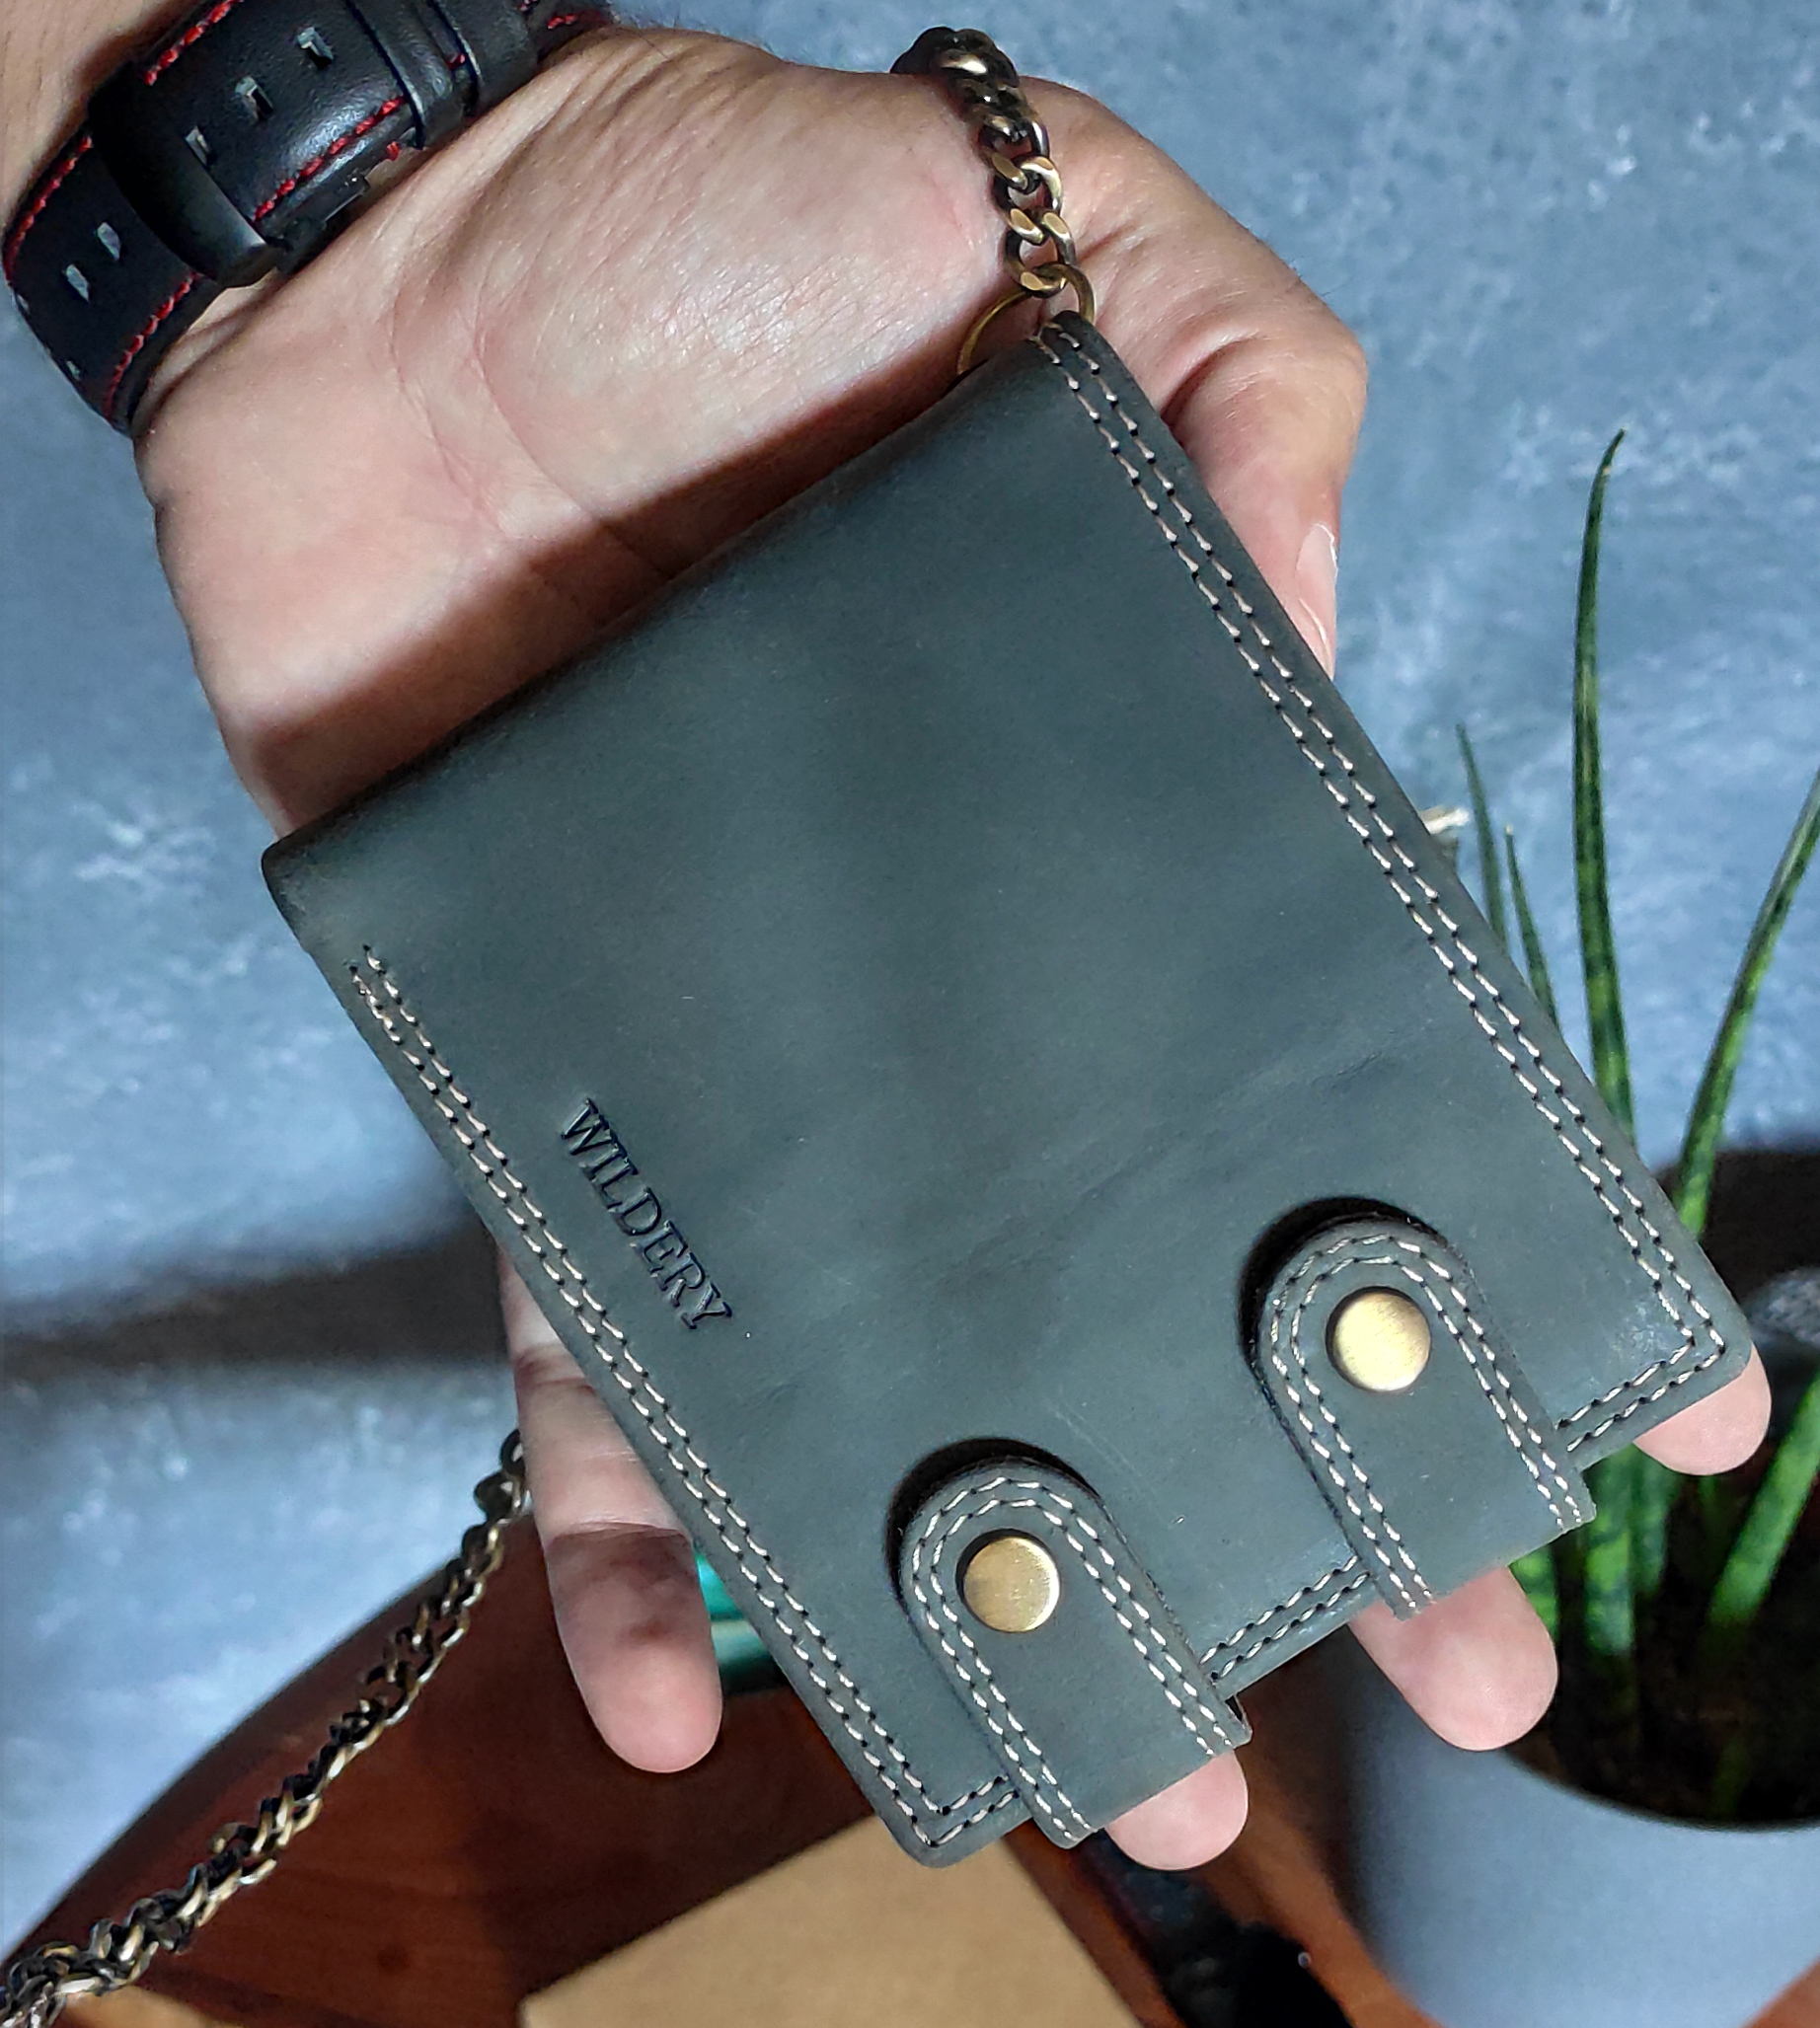 Herren Voll Leder Geldbörse mit RFID und NFC Schutz im Querformat im Vintage Look mit Sicherheitskette